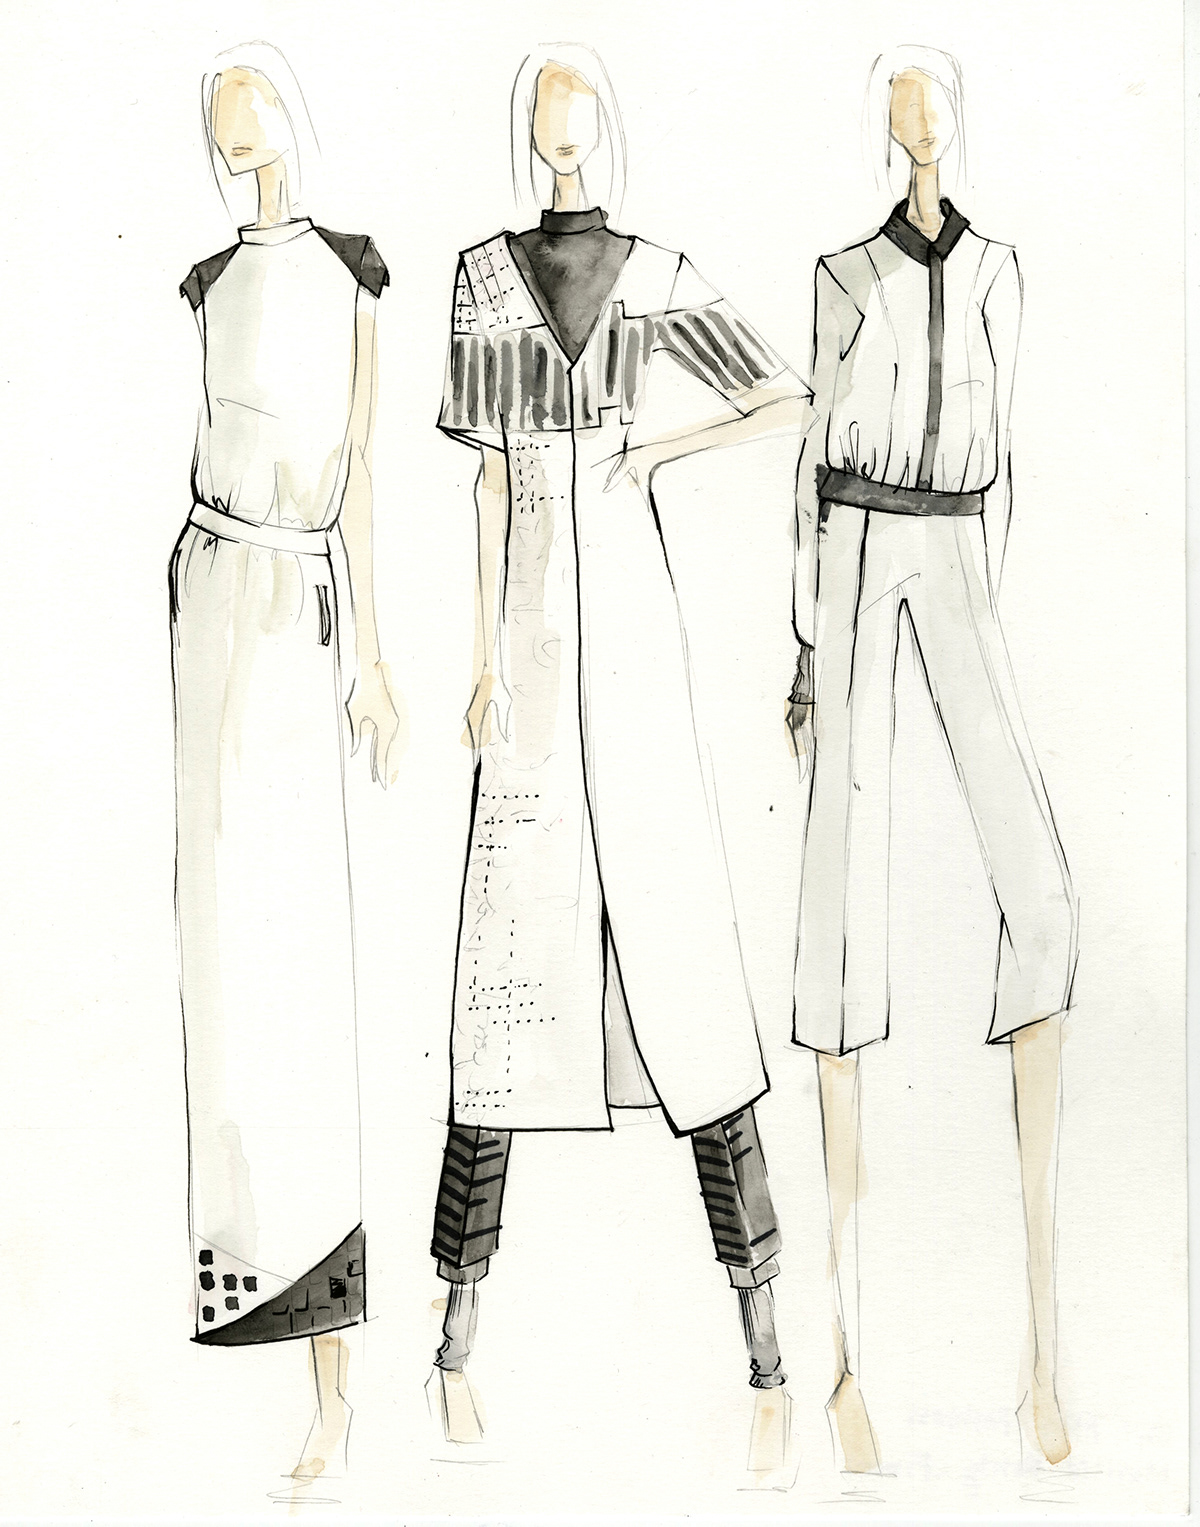 fashion design OCD Obsessive Compulsive fibers Collaboration monoprint black and white